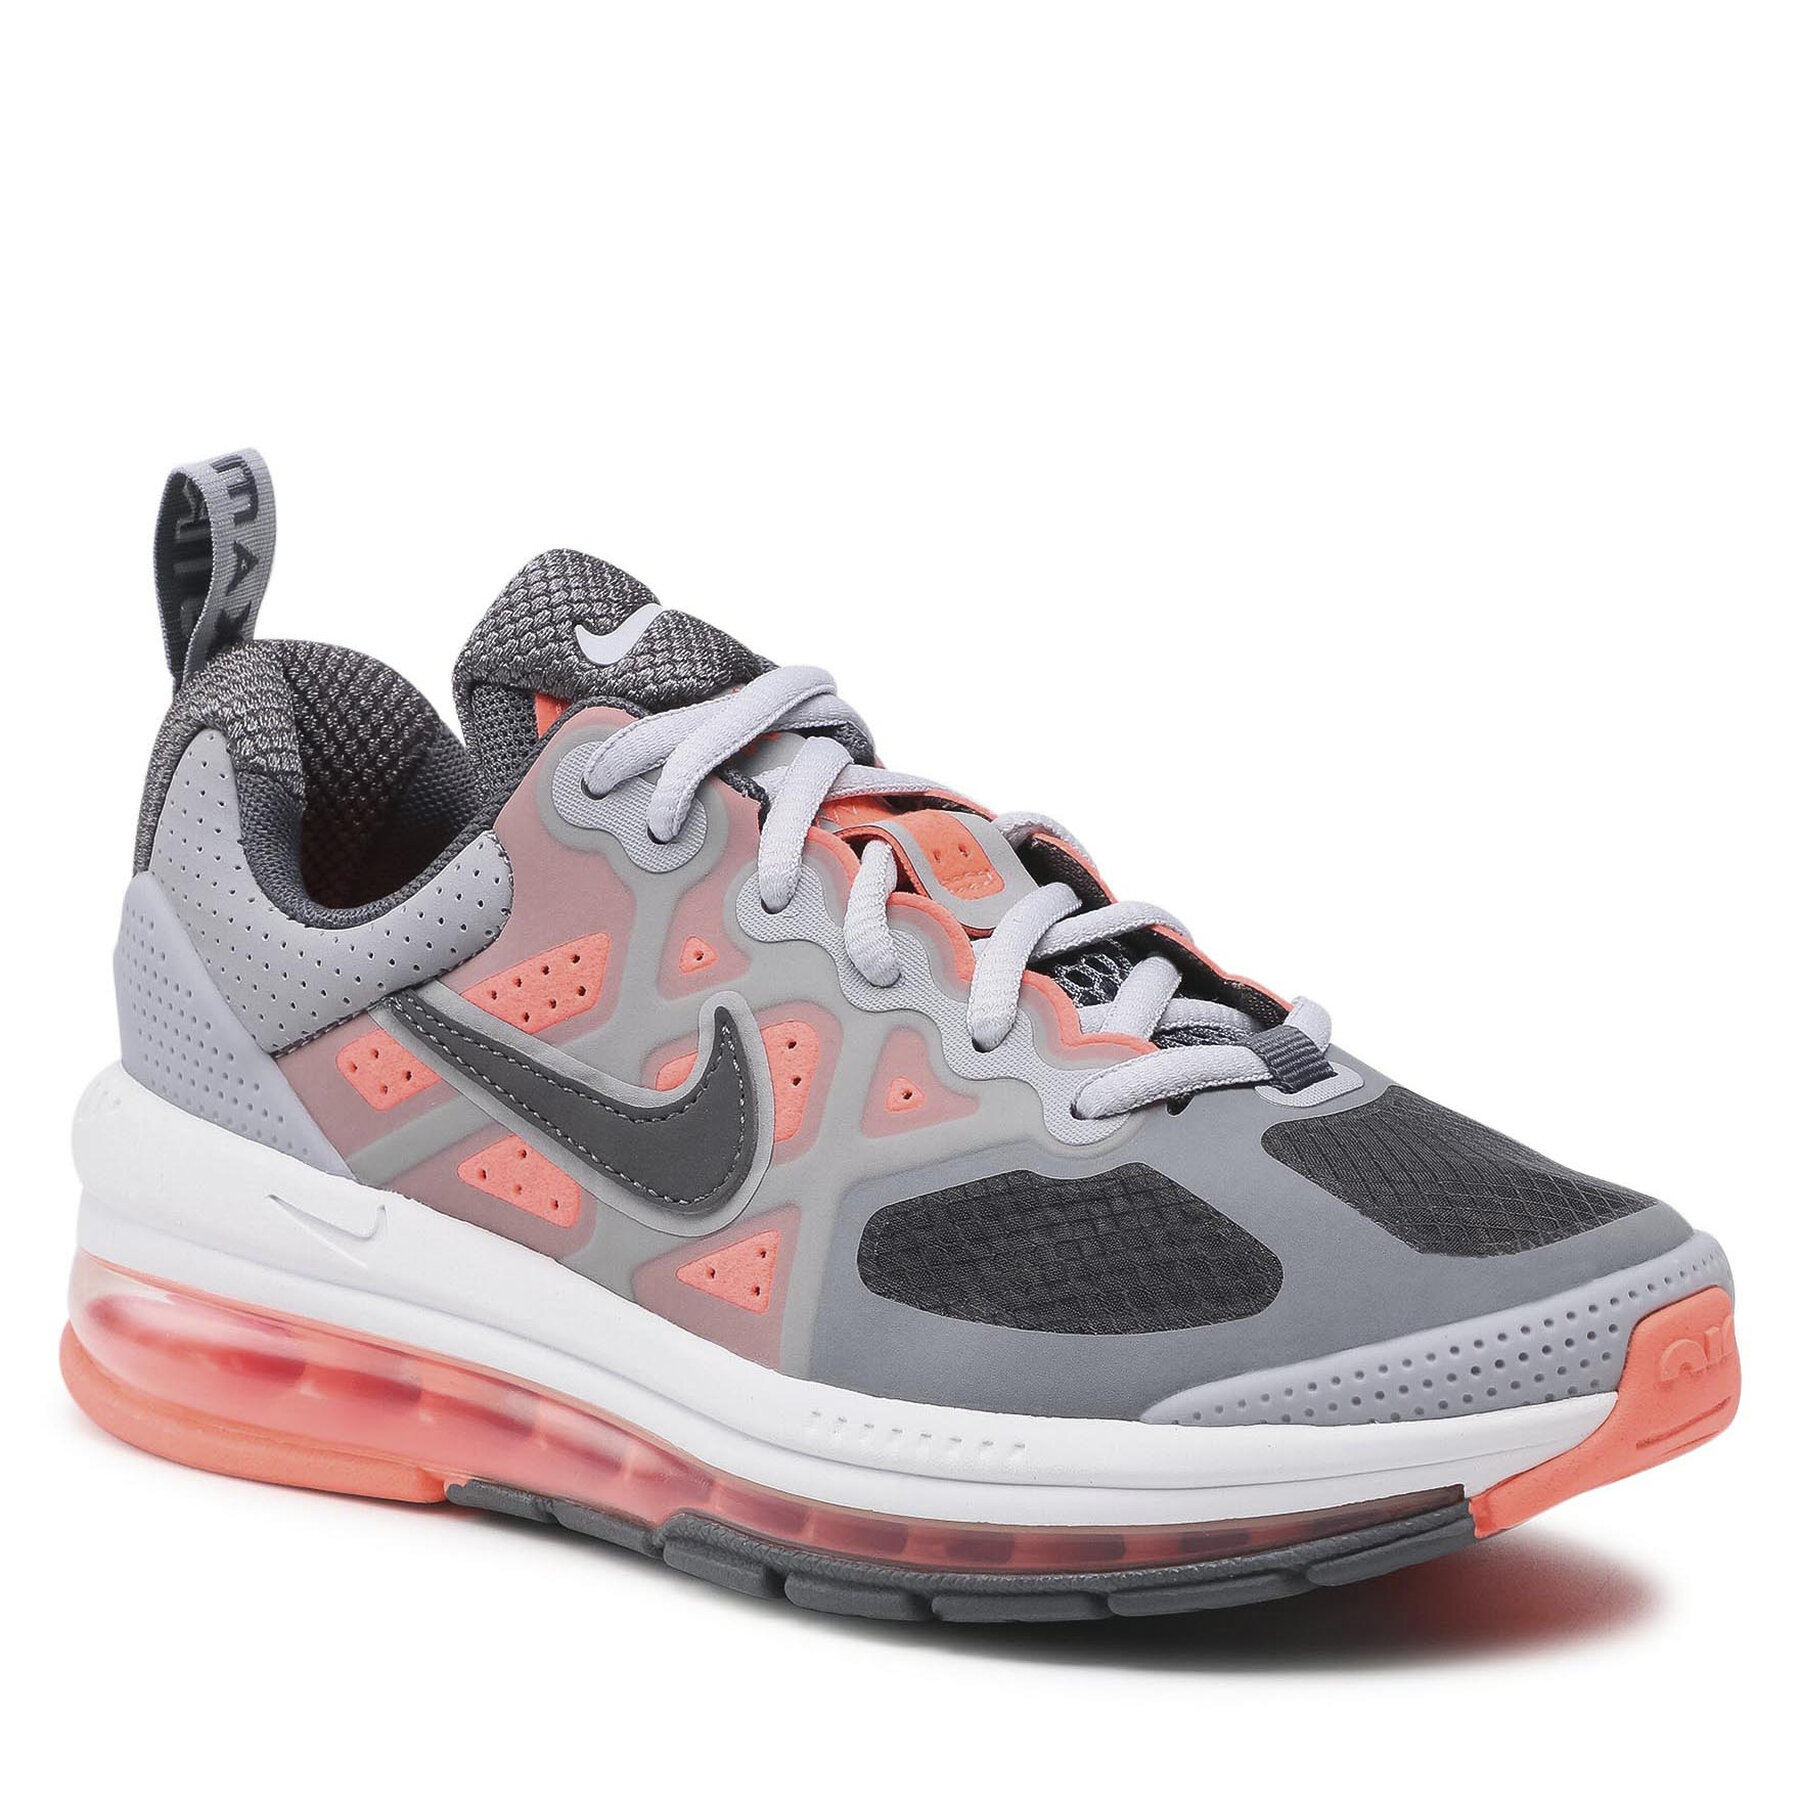 Pantofi Nike Air Max Genome (Gs) CZ4652 004 Lt Smoke Grey/Iron Grey